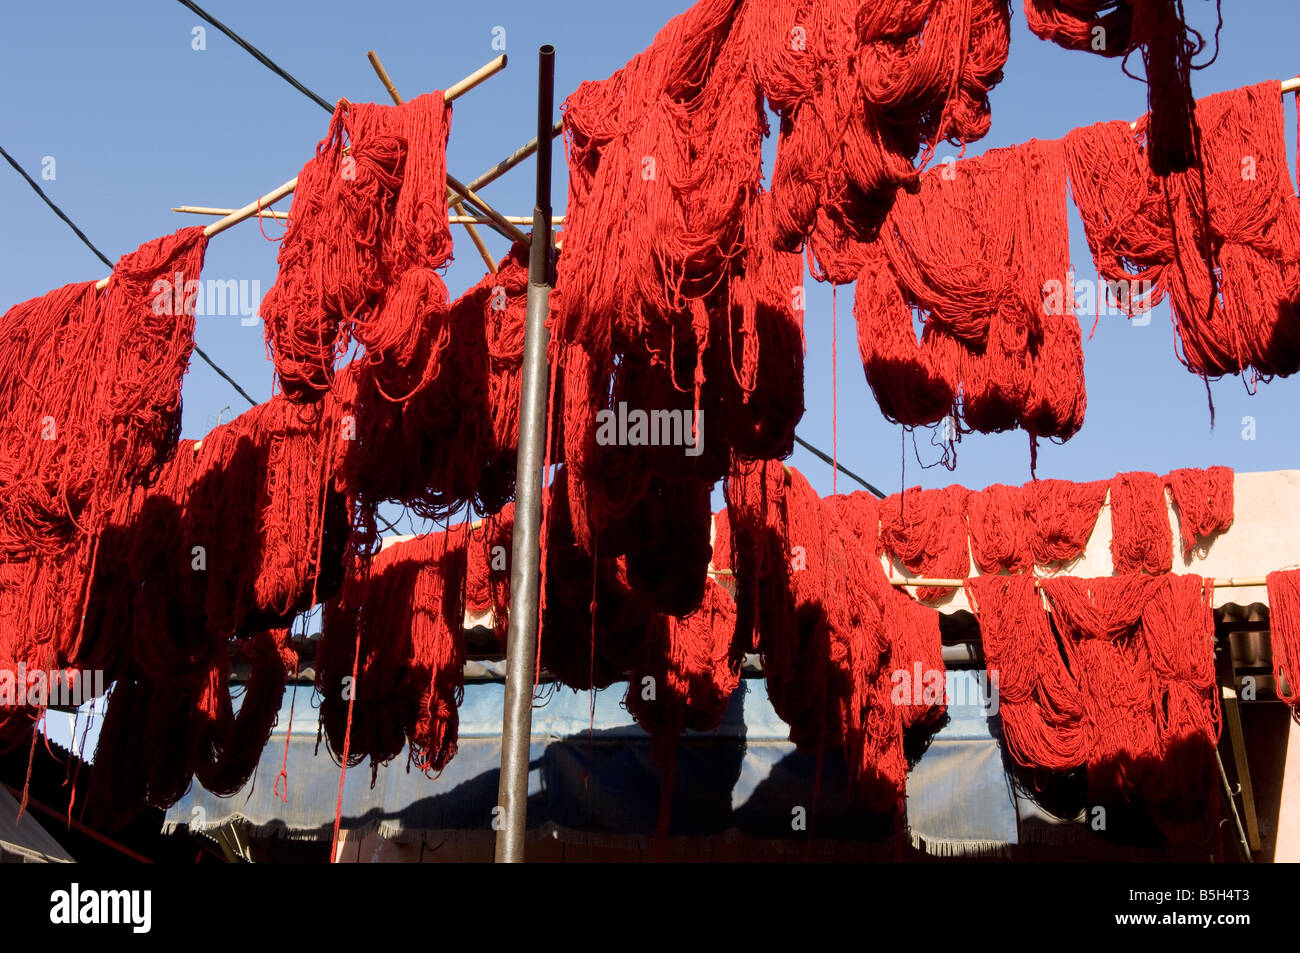 Lanas teñidas de rojo se cuelga a secar sobre el mercado en Marakech, Marruecos. Foto de stock